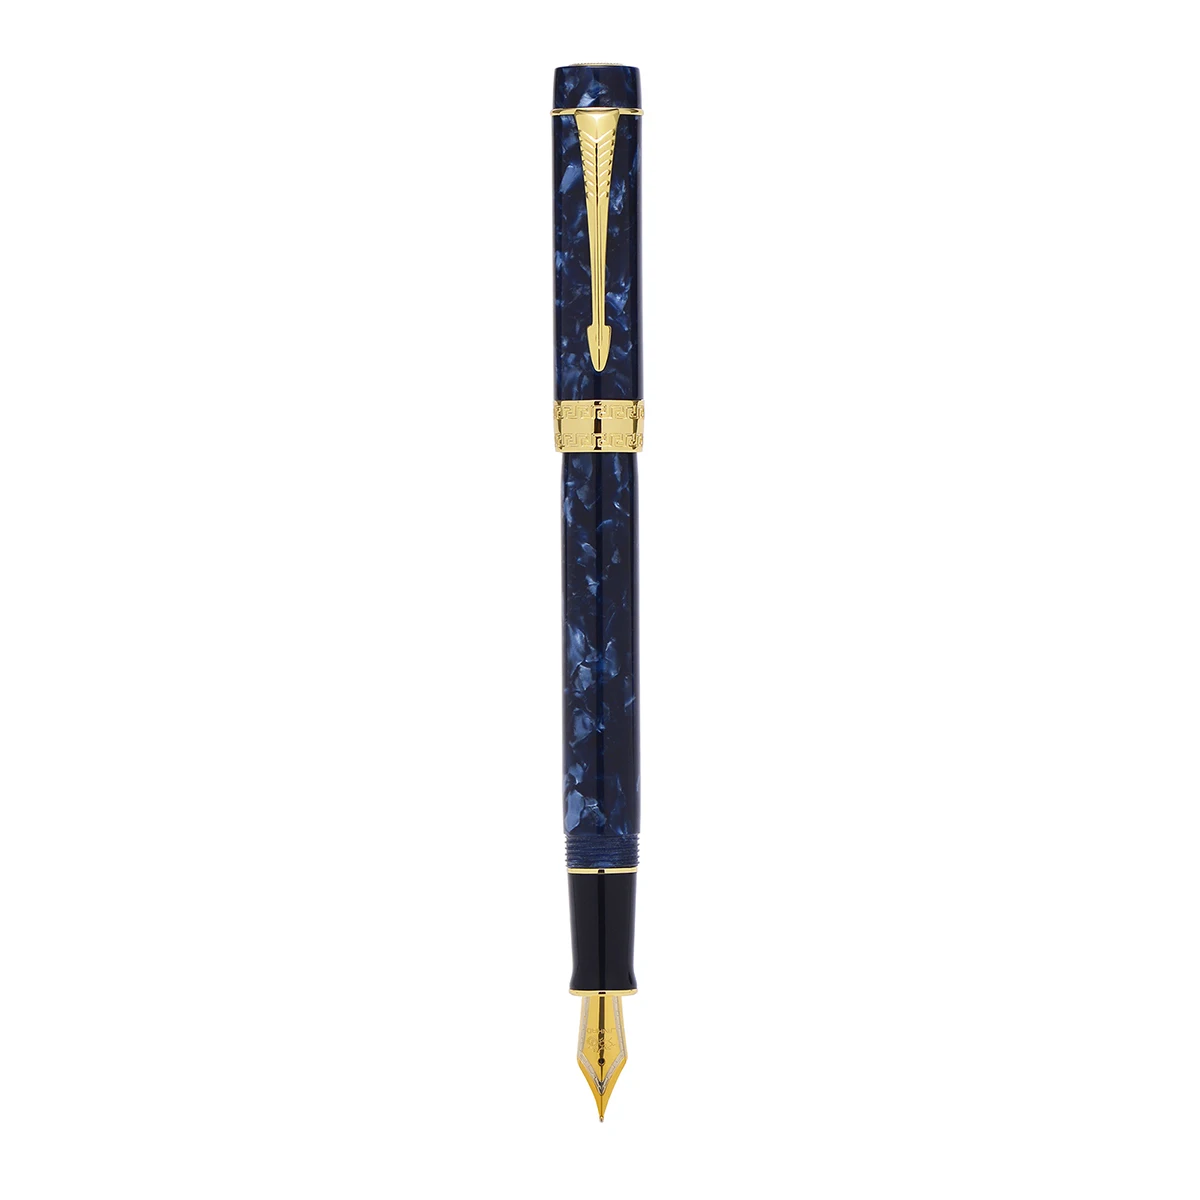 

Перьевая ручка Jinhao, 100 А, из смолы, синяя мраморная чернильная ручка, стрелка с зажимом, иридиевая, F/M/изогнутое перо, с конвертером, для бизнес...